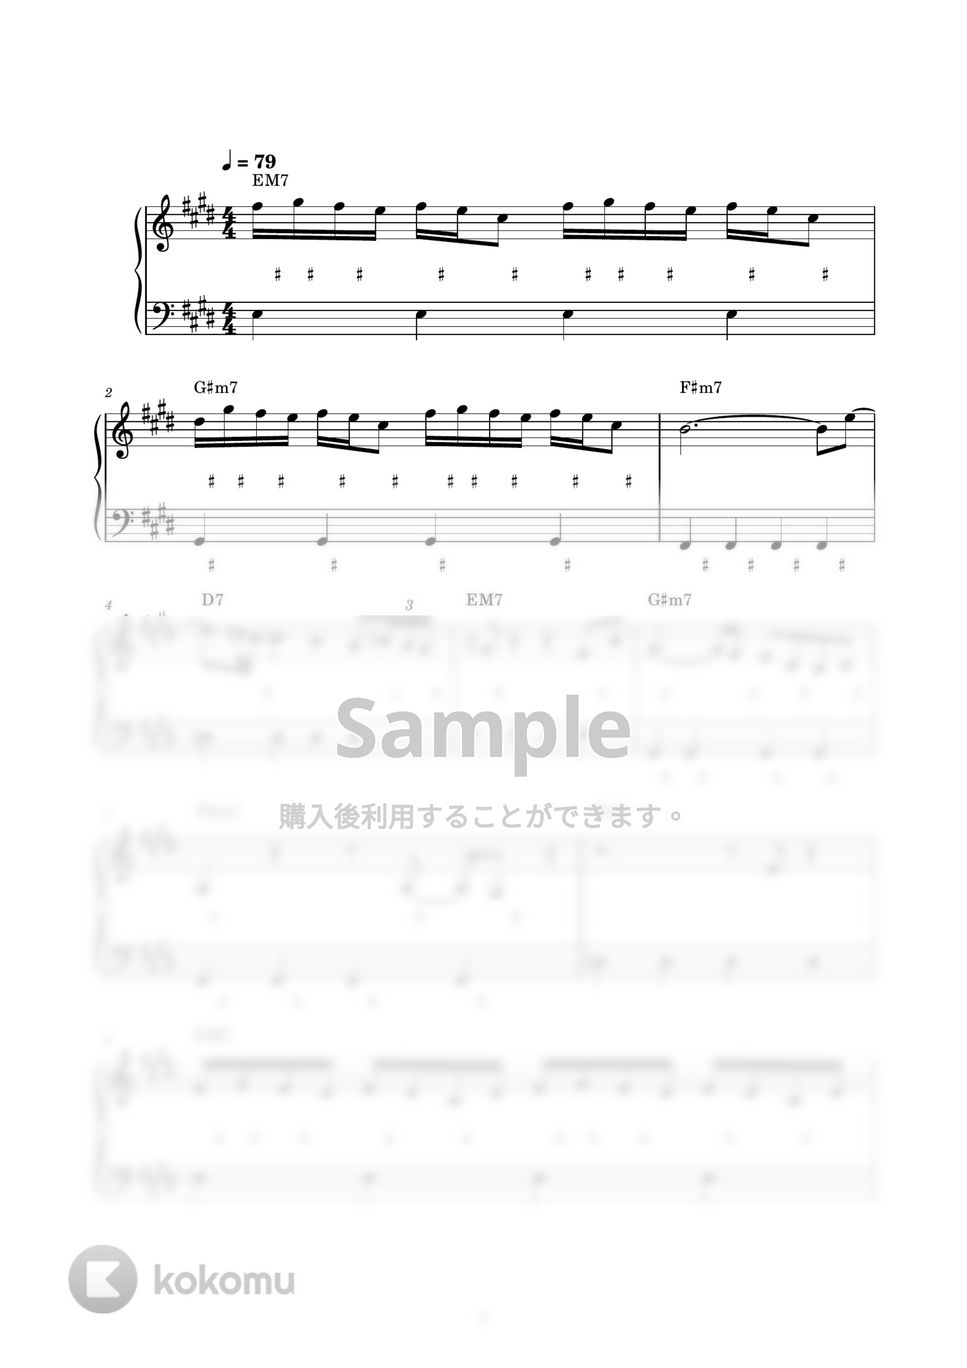 藤井風 - 死ぬのがいいわ (ピアノ楽譜 / かんたん両手 / 歌詞付き / ドレミ付き / 初心者向き) by piano.tokyo